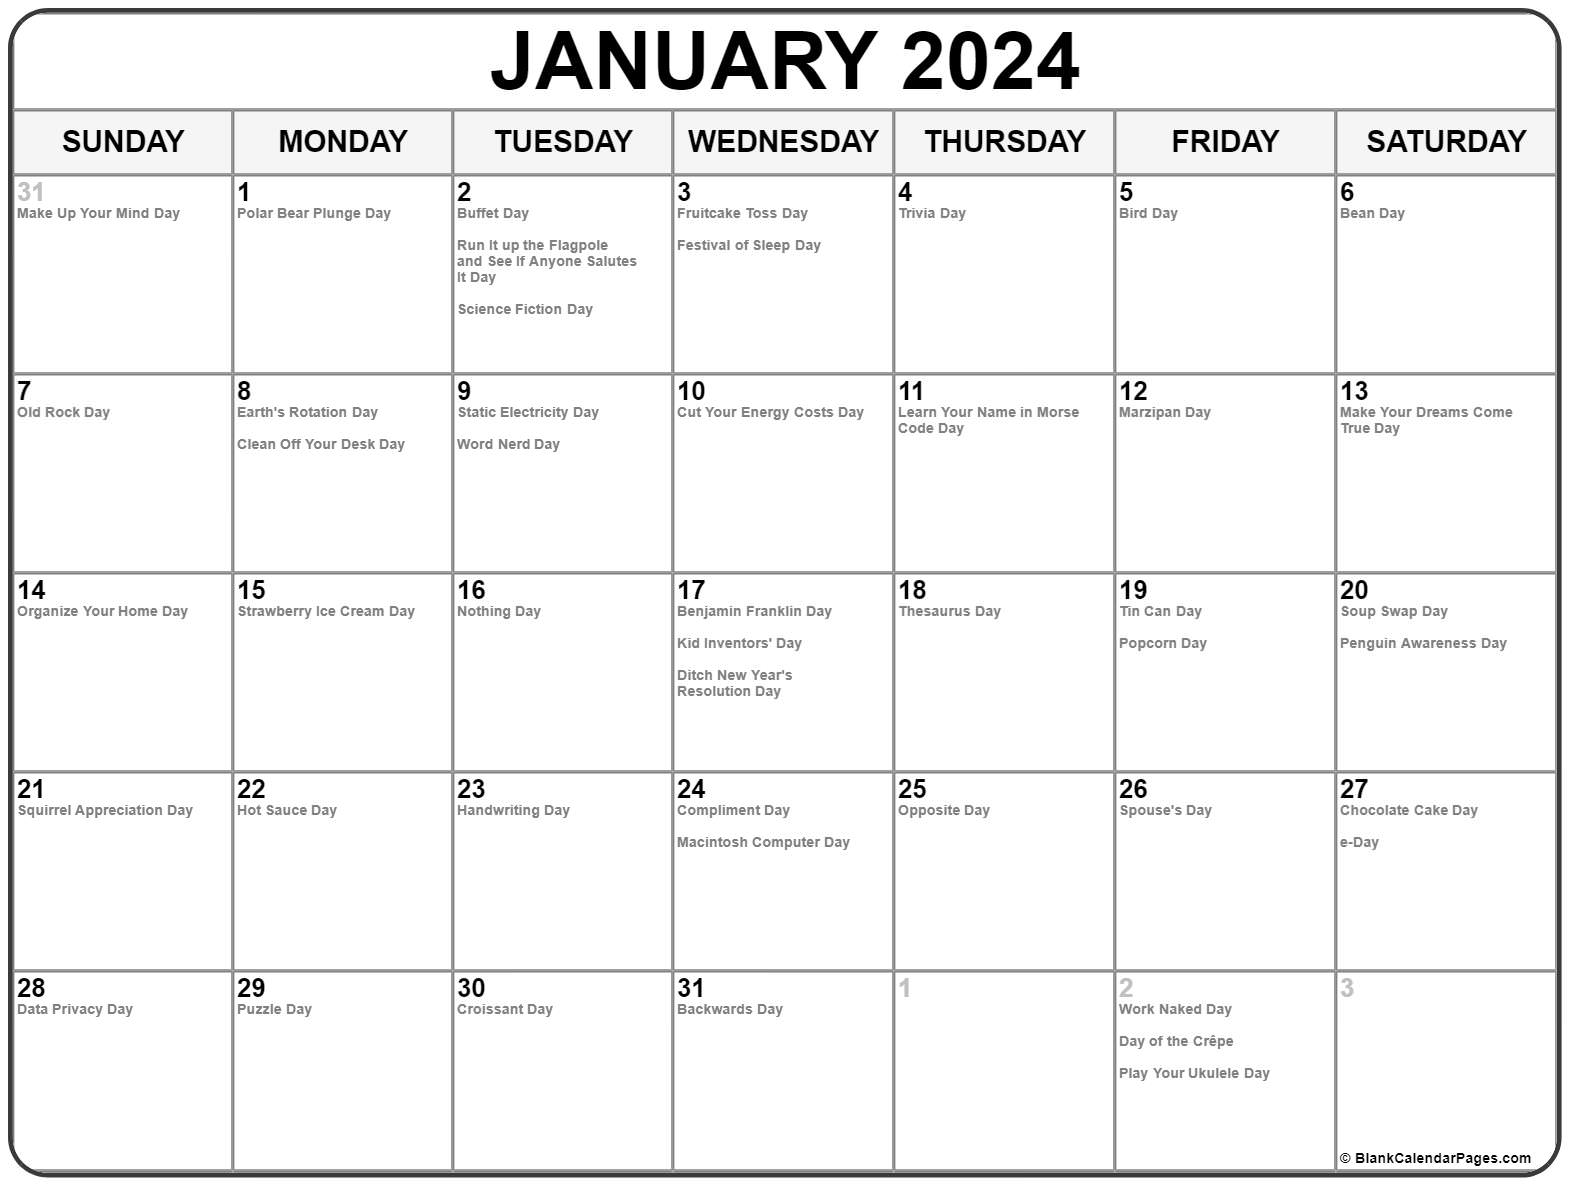 dream-come-true-2022-calendar-march-calendar-2022